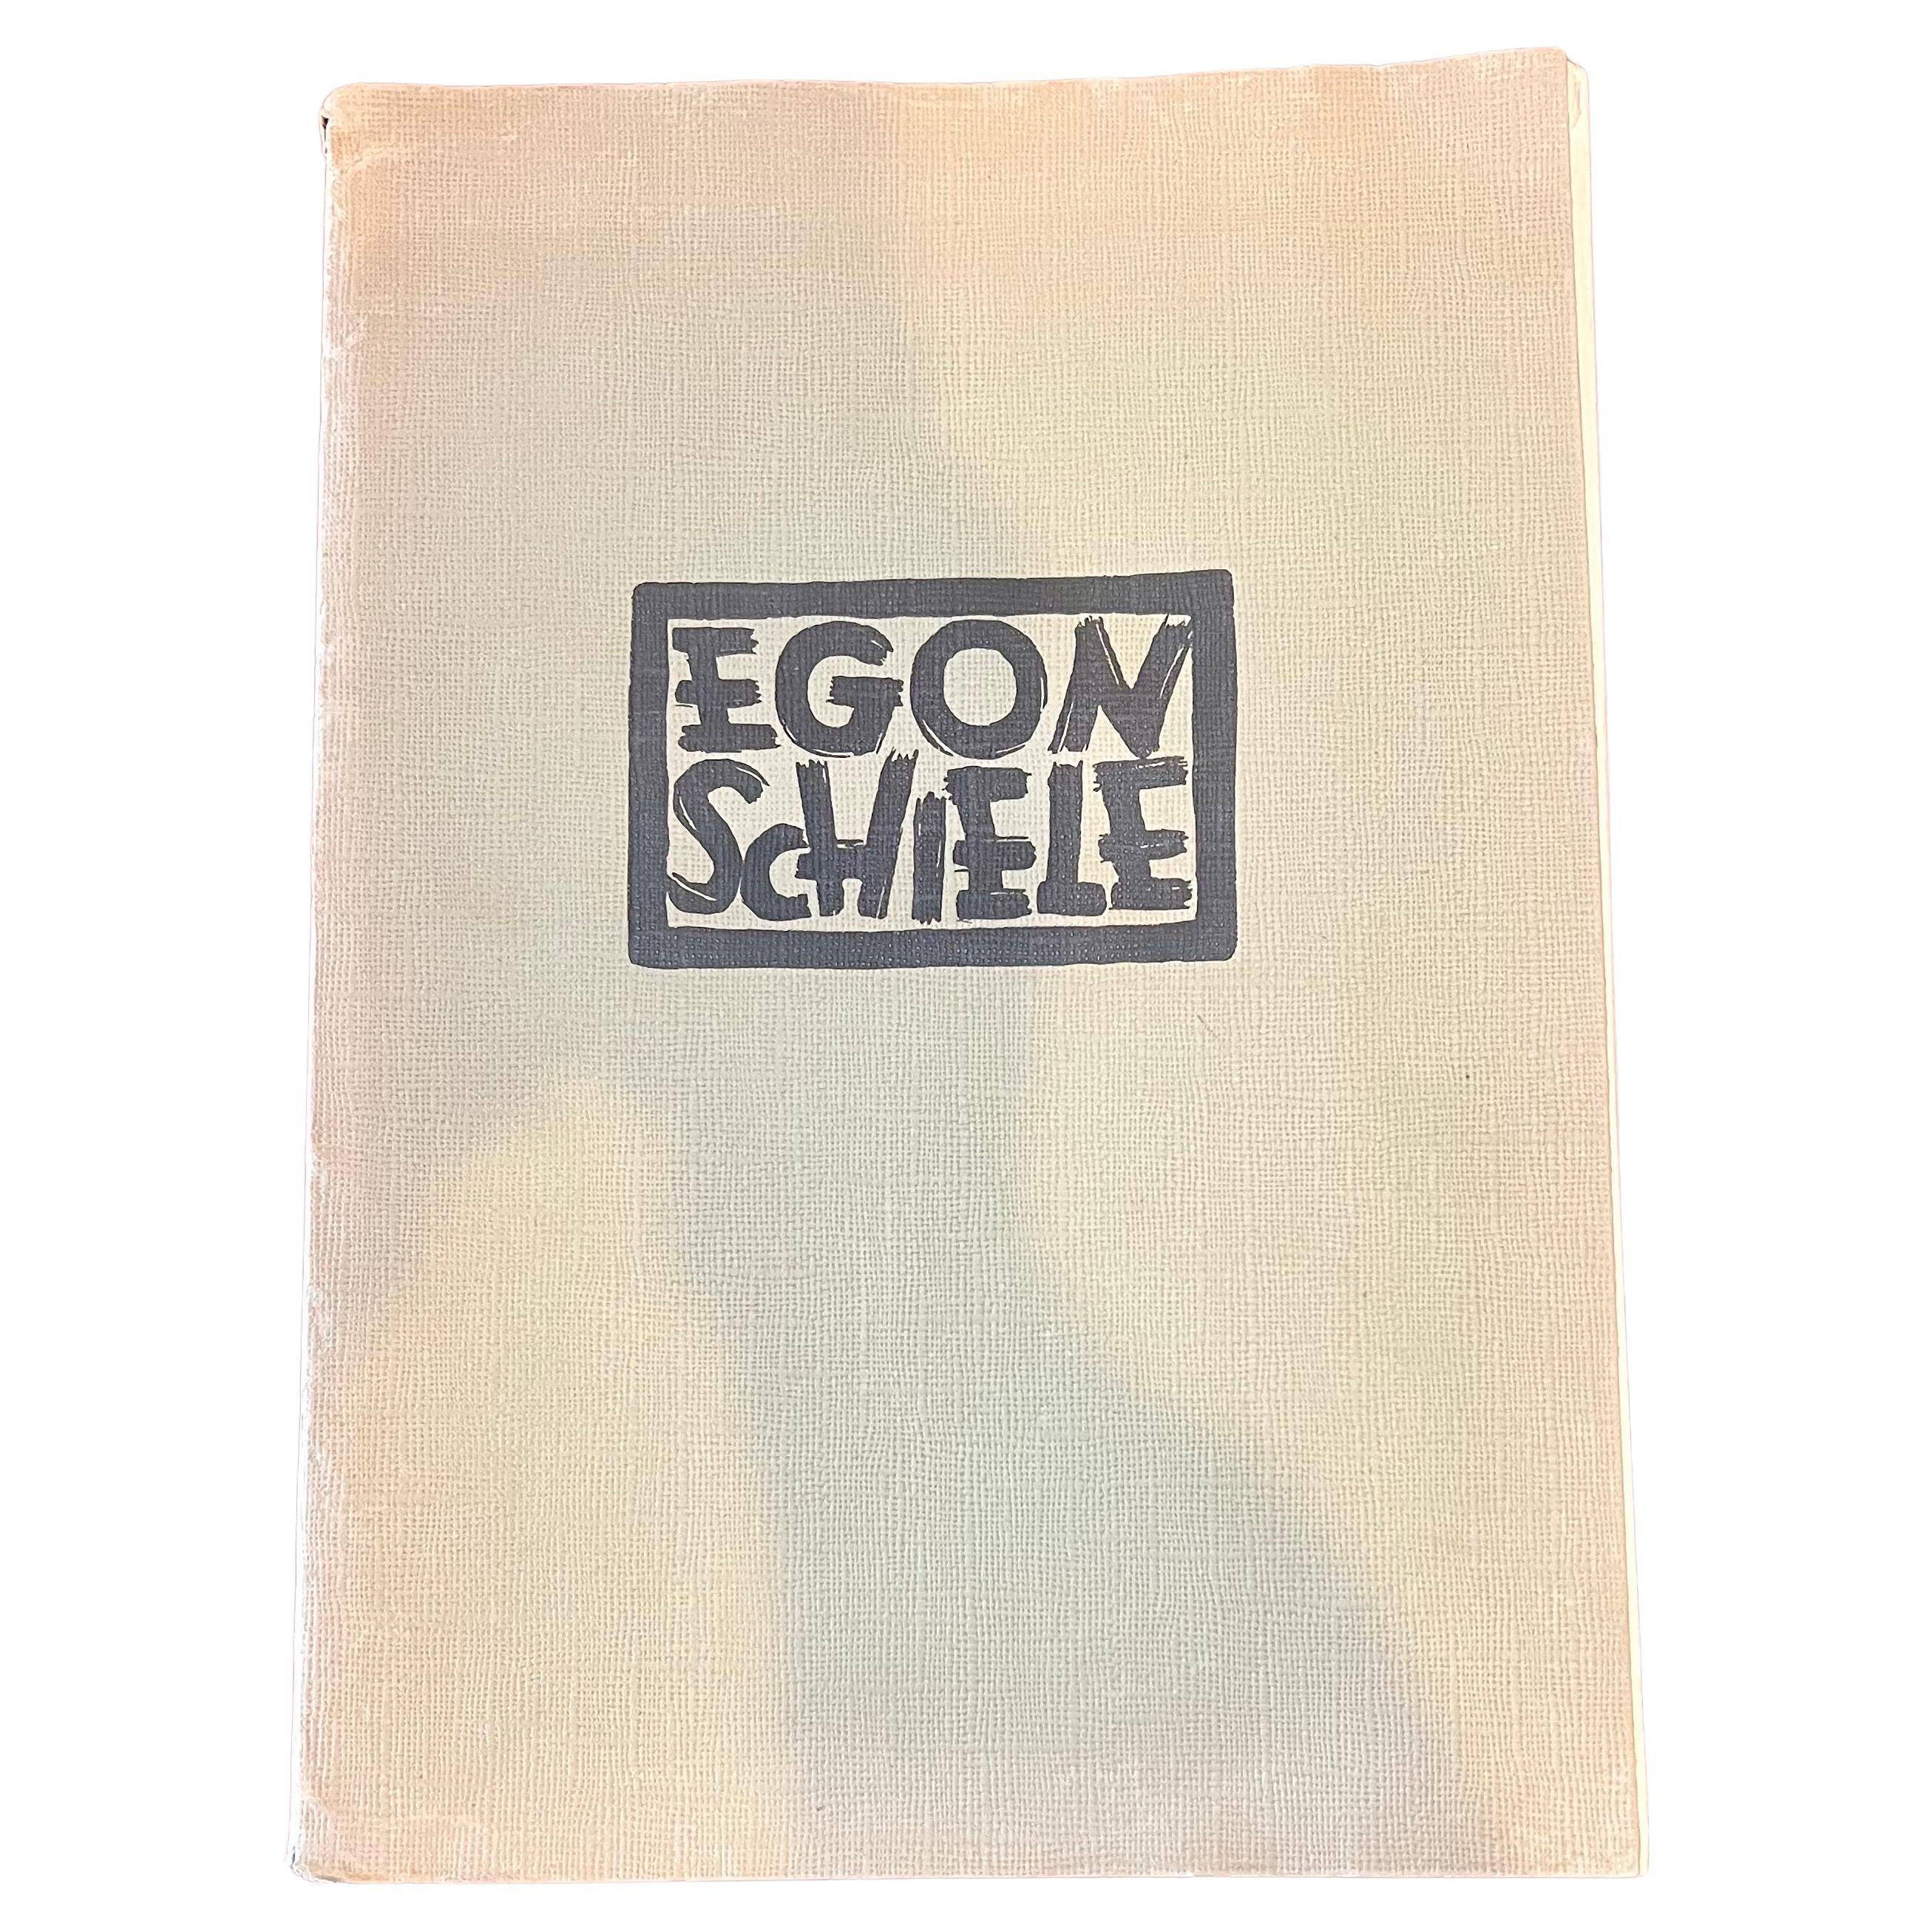 Première édition rare du livre Portofolio d'Egon Schiele 24 tirages non encadrés